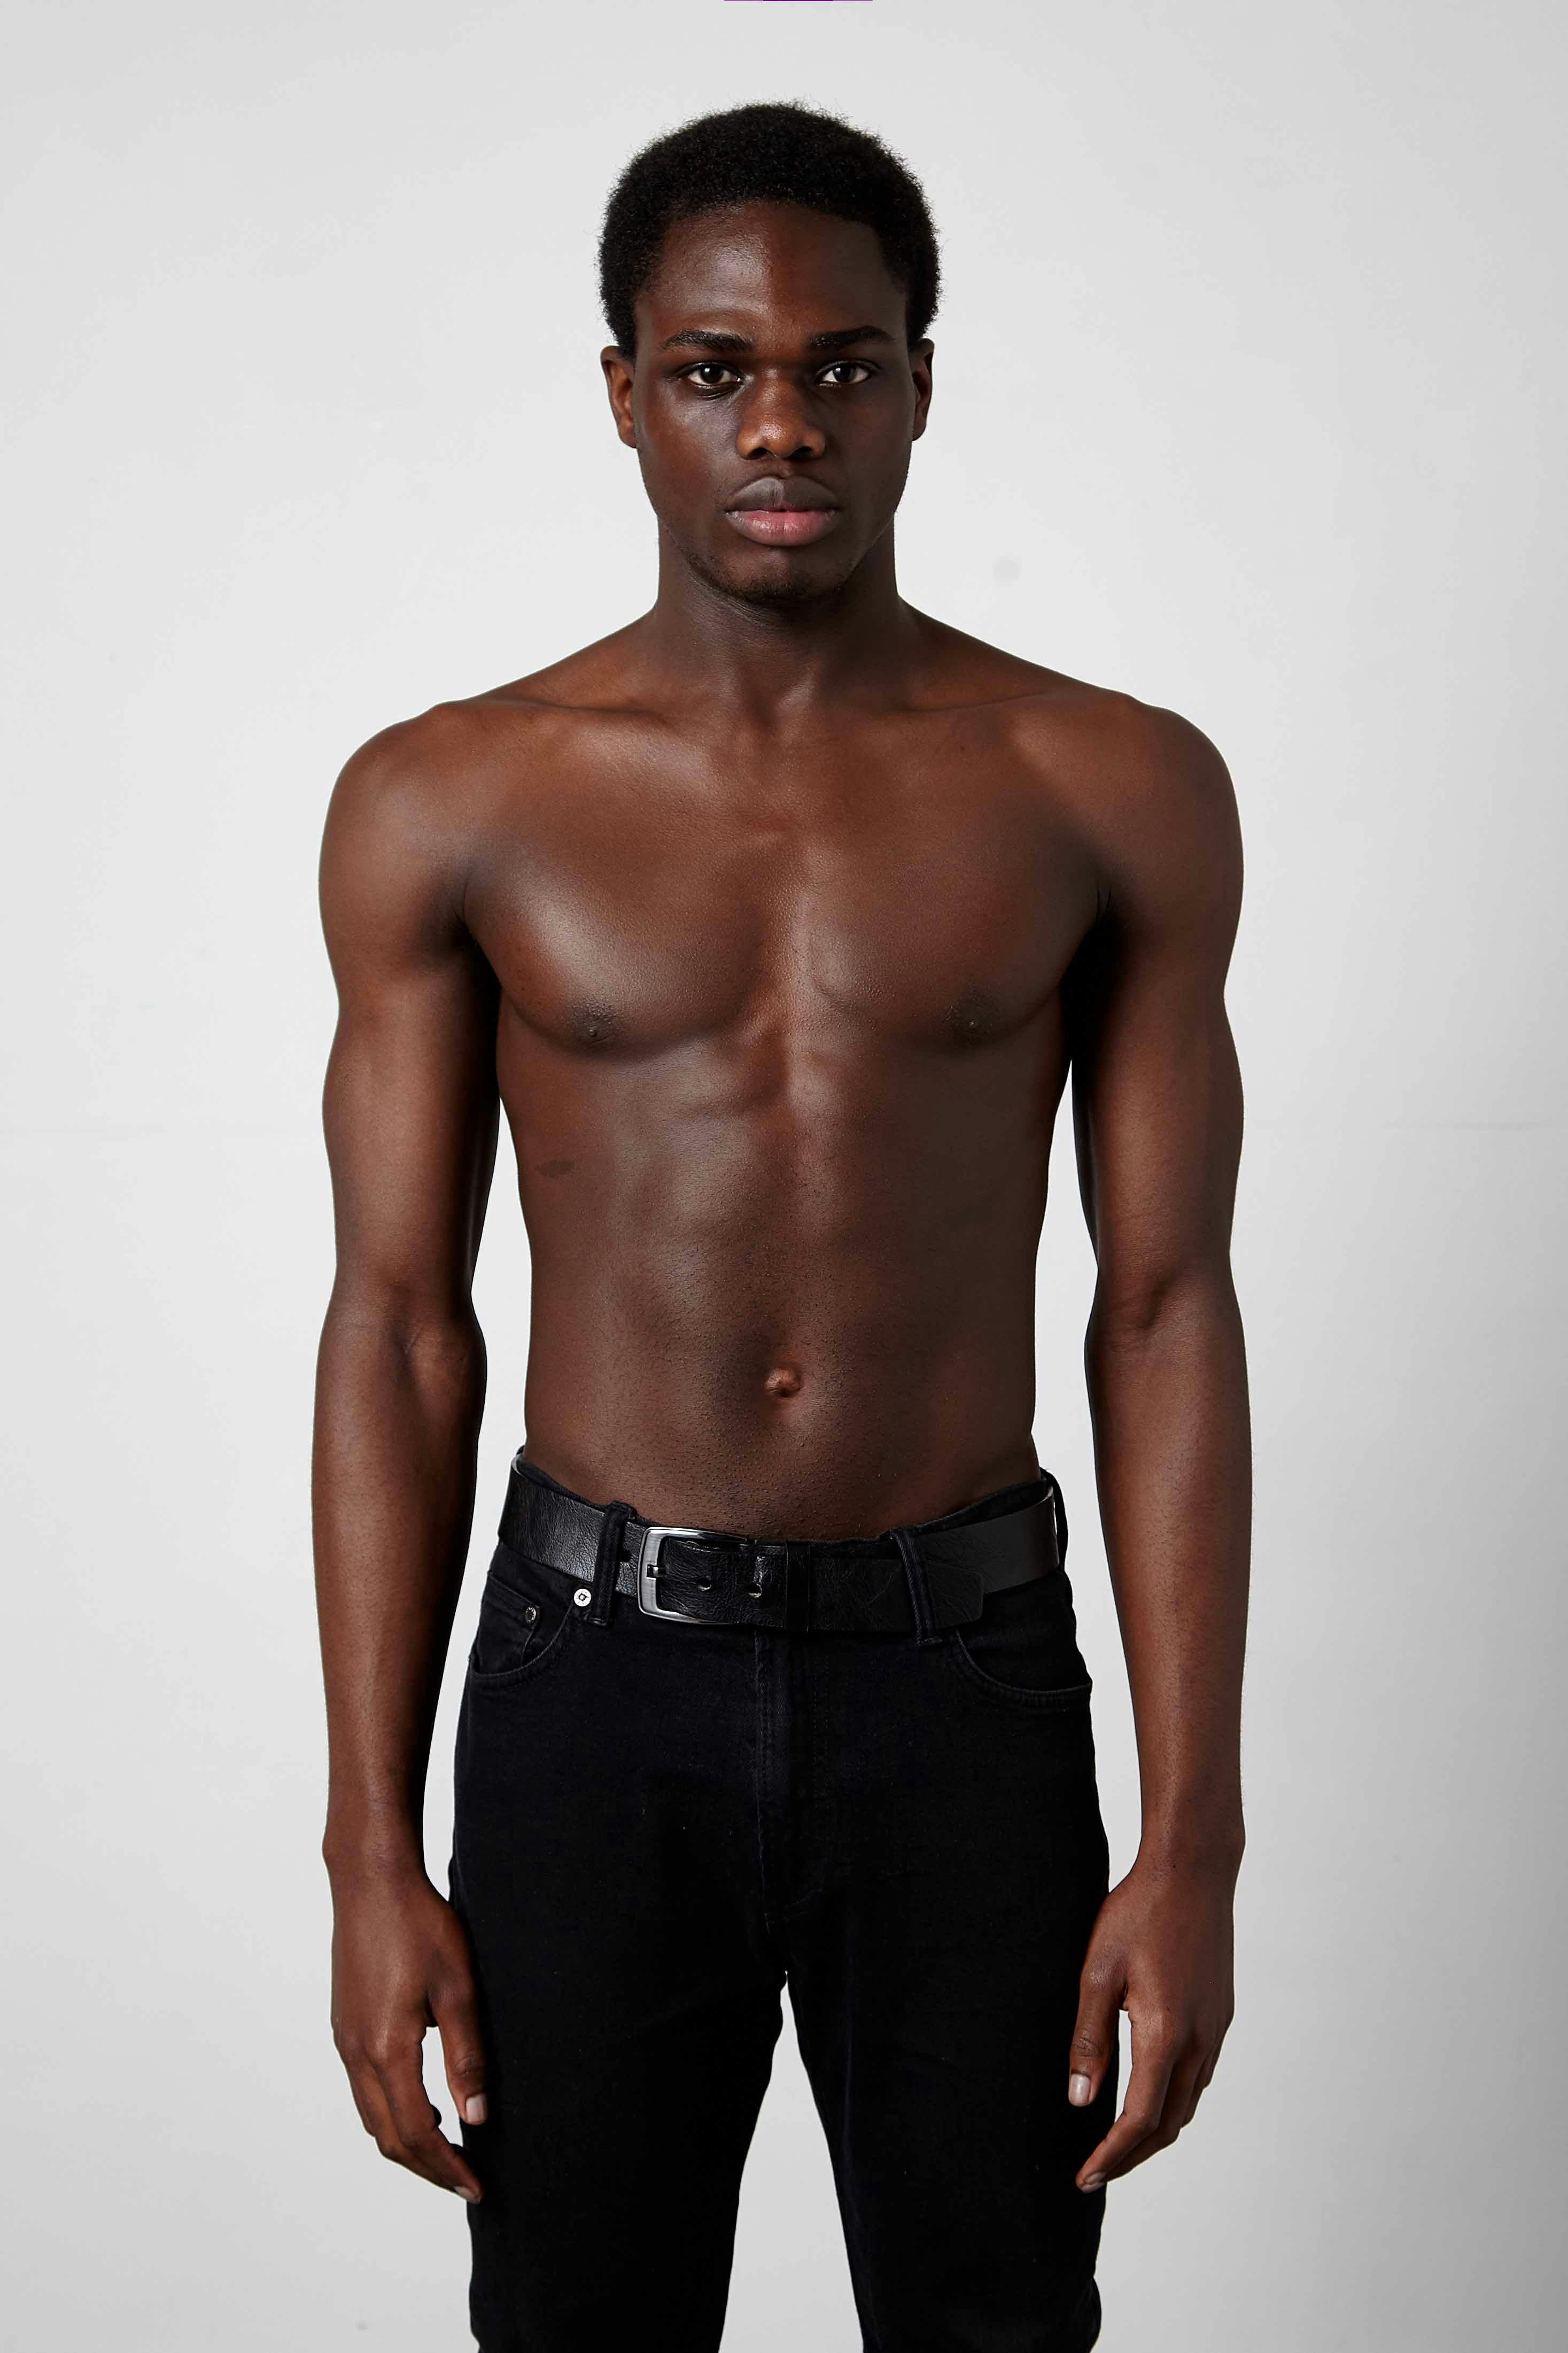 An image of Edward Yeboah